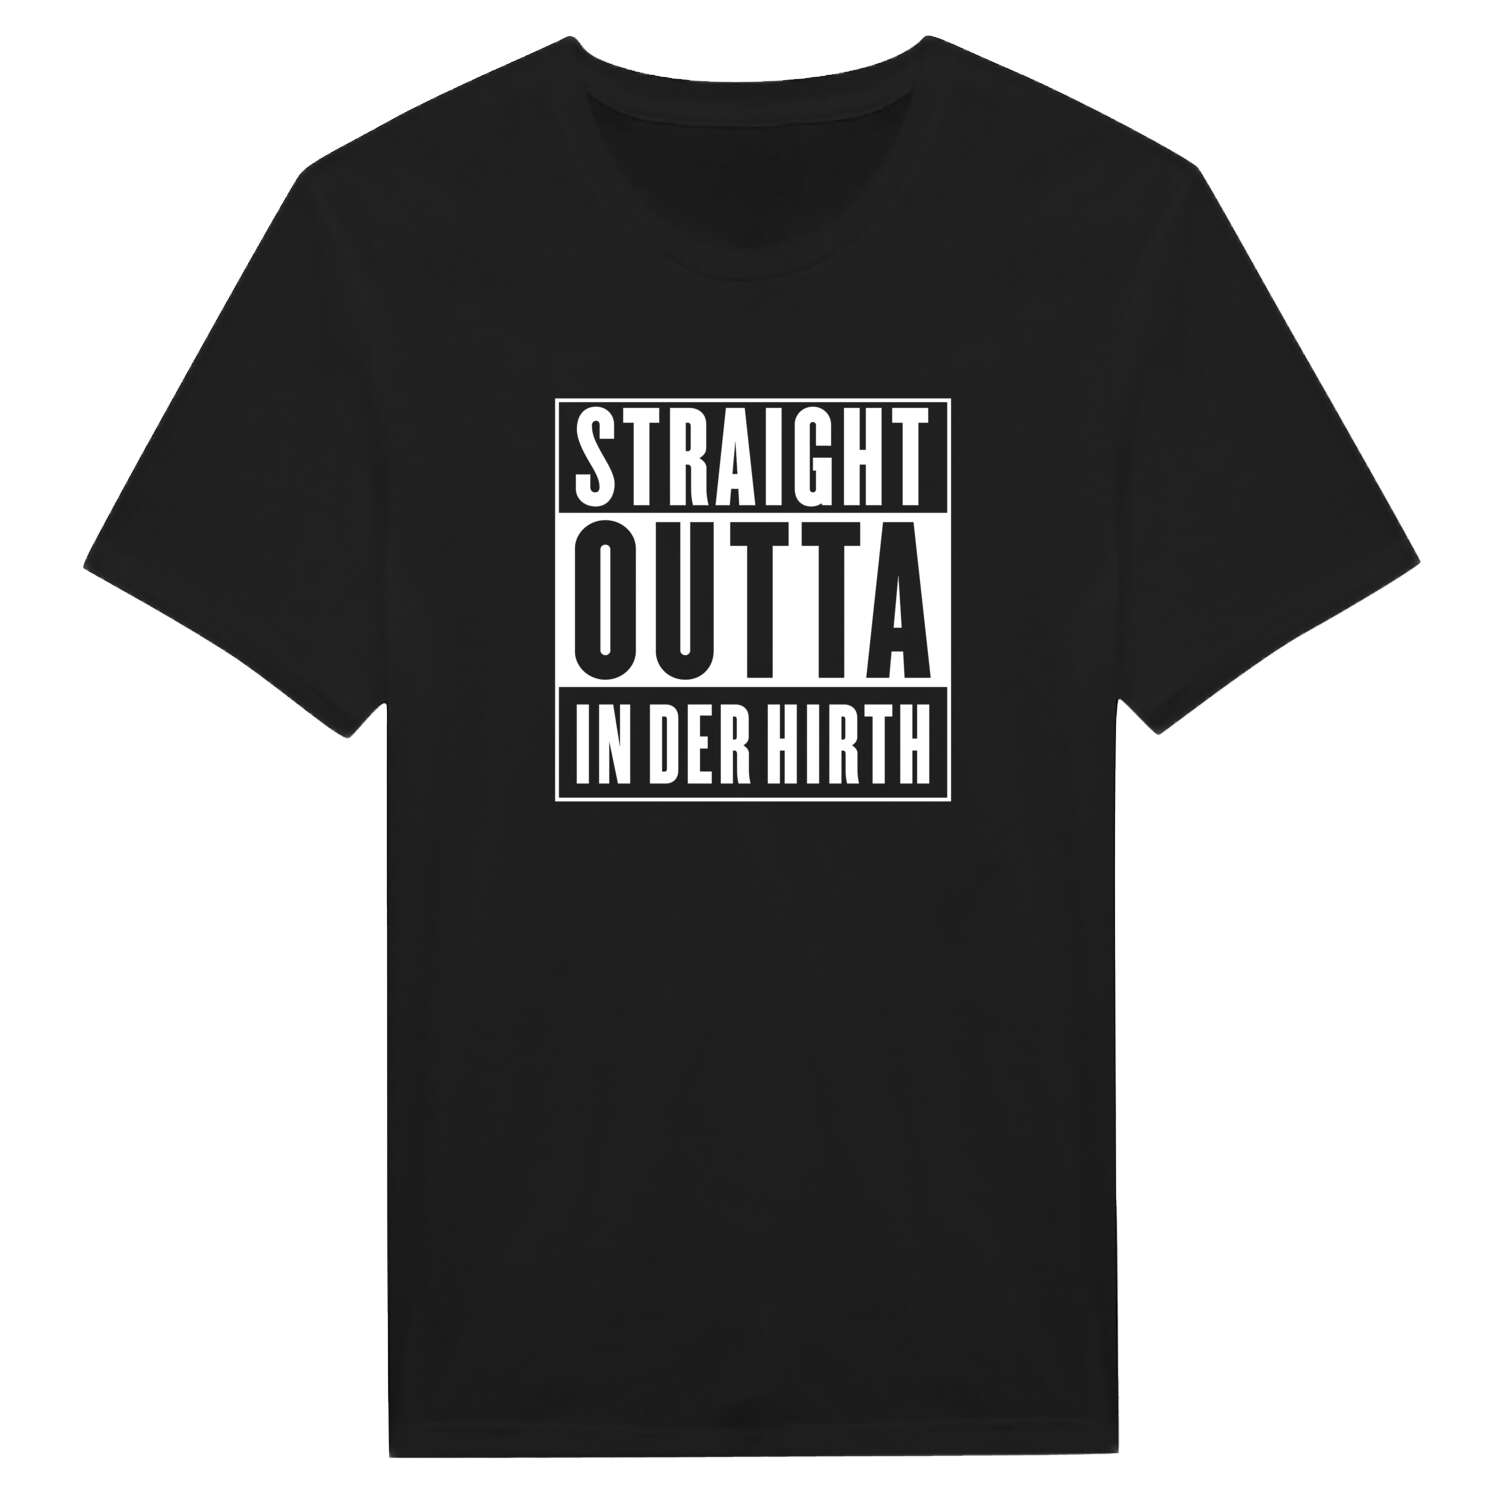 In der Hirth T-Shirt »Straight Outta«